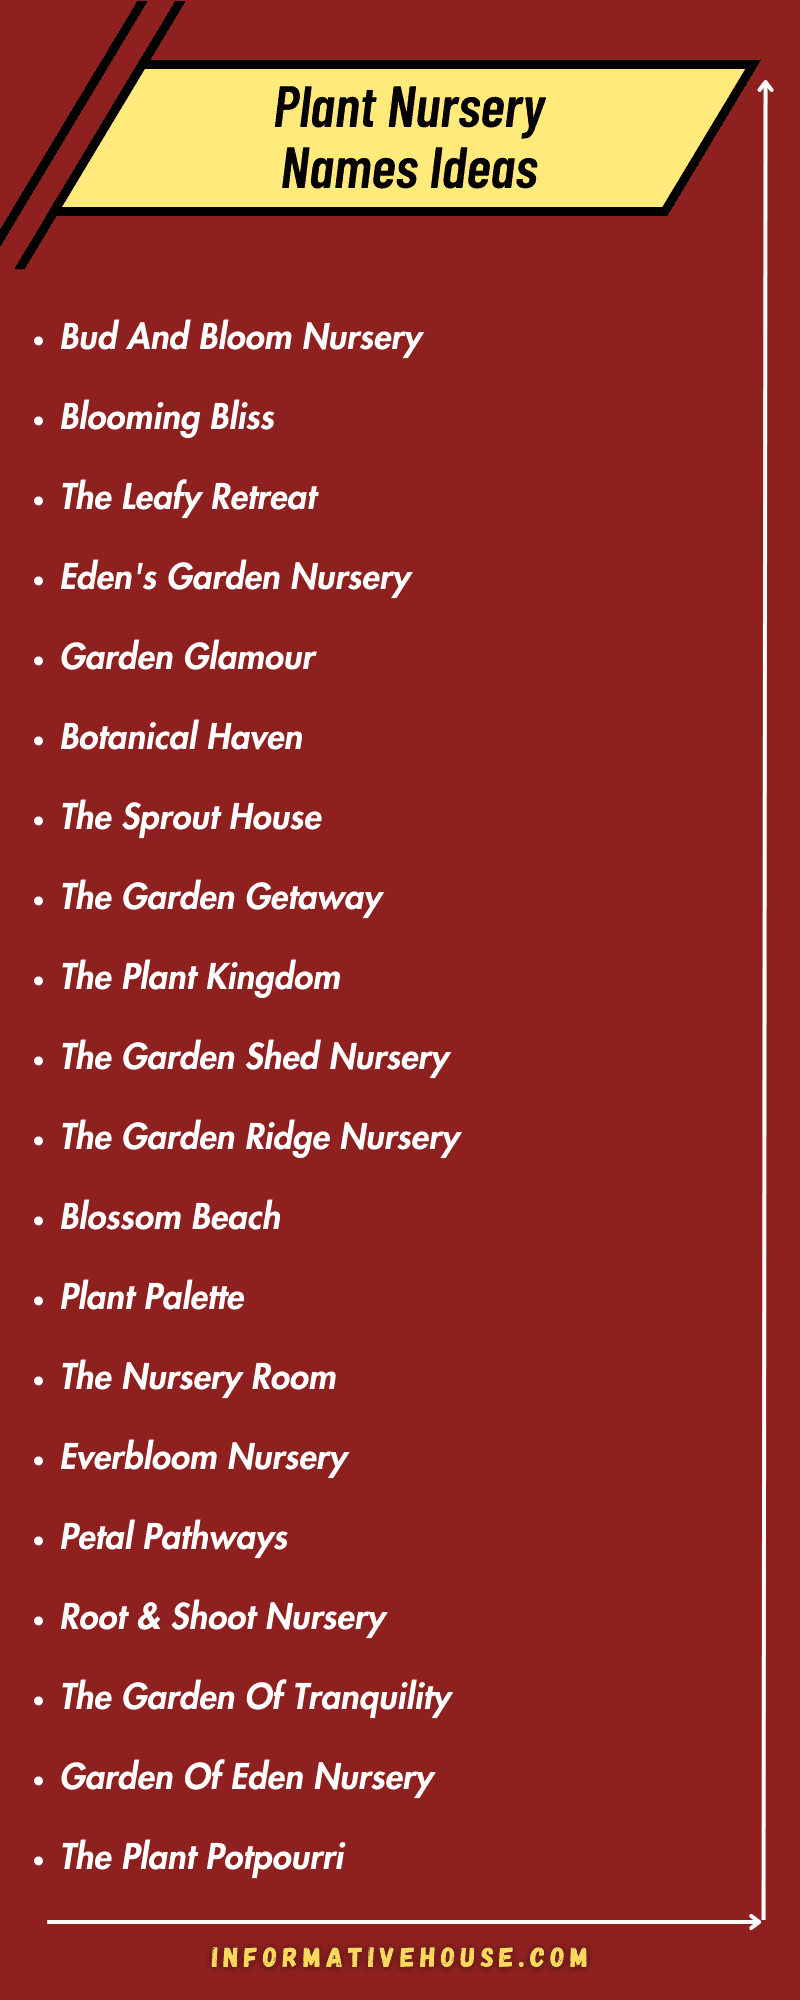 Unique Plant Nursery Names Ideas